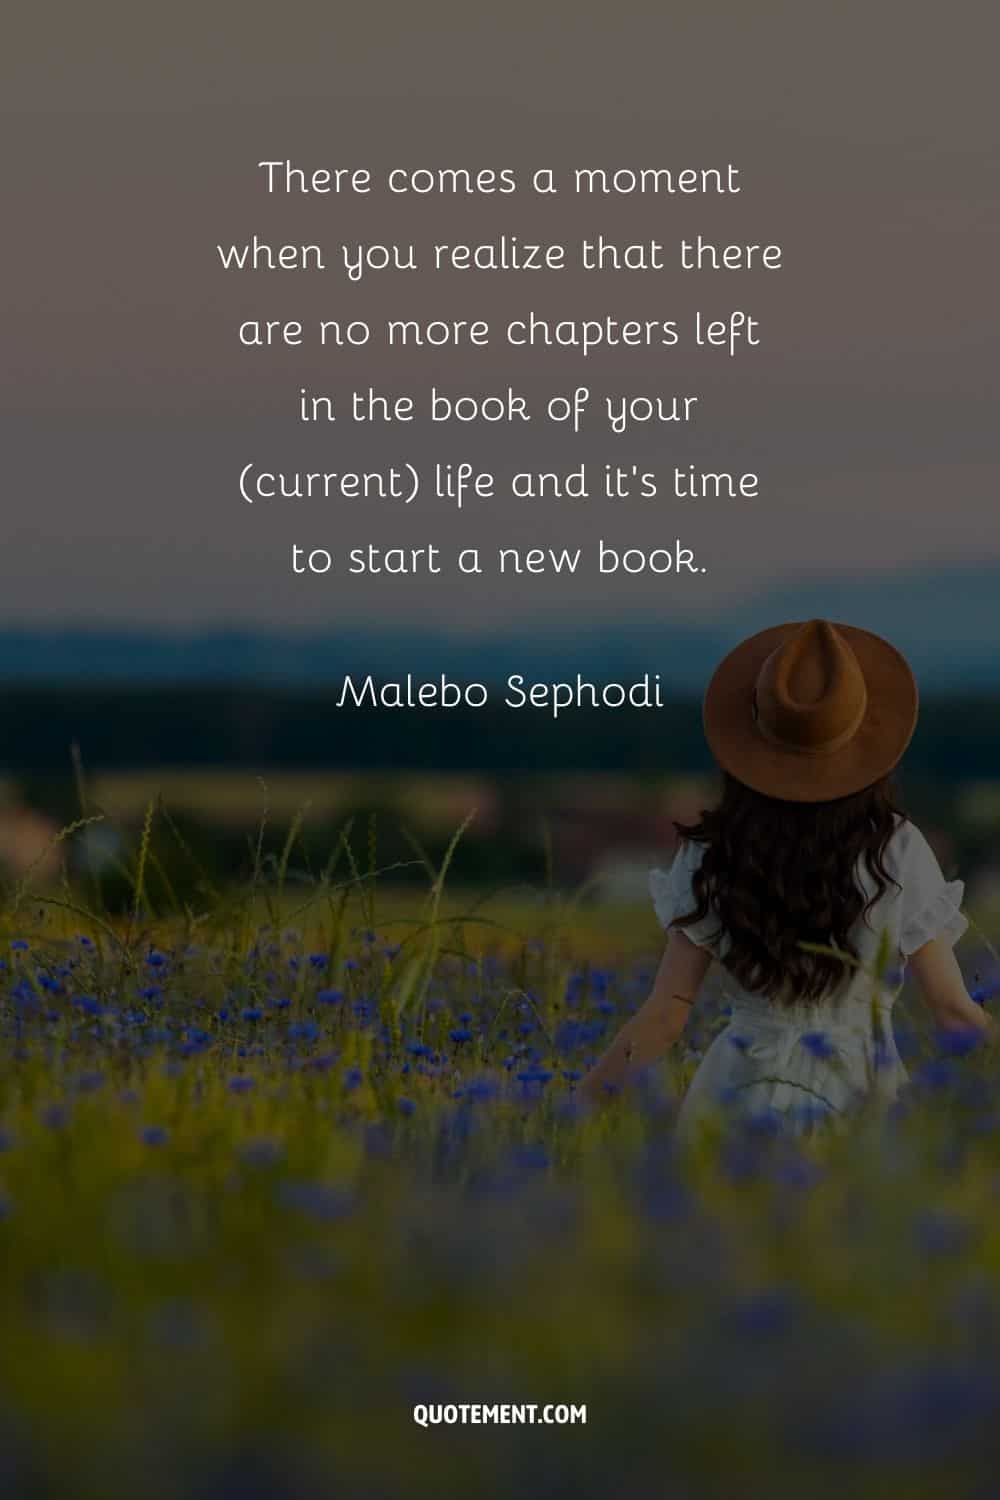 "Llega un momento en que te das cuenta de que no quedan más capítulos en el libro de tu vida (actual) y es hora de empezar un libro nuevo". - Malebo Sephodi